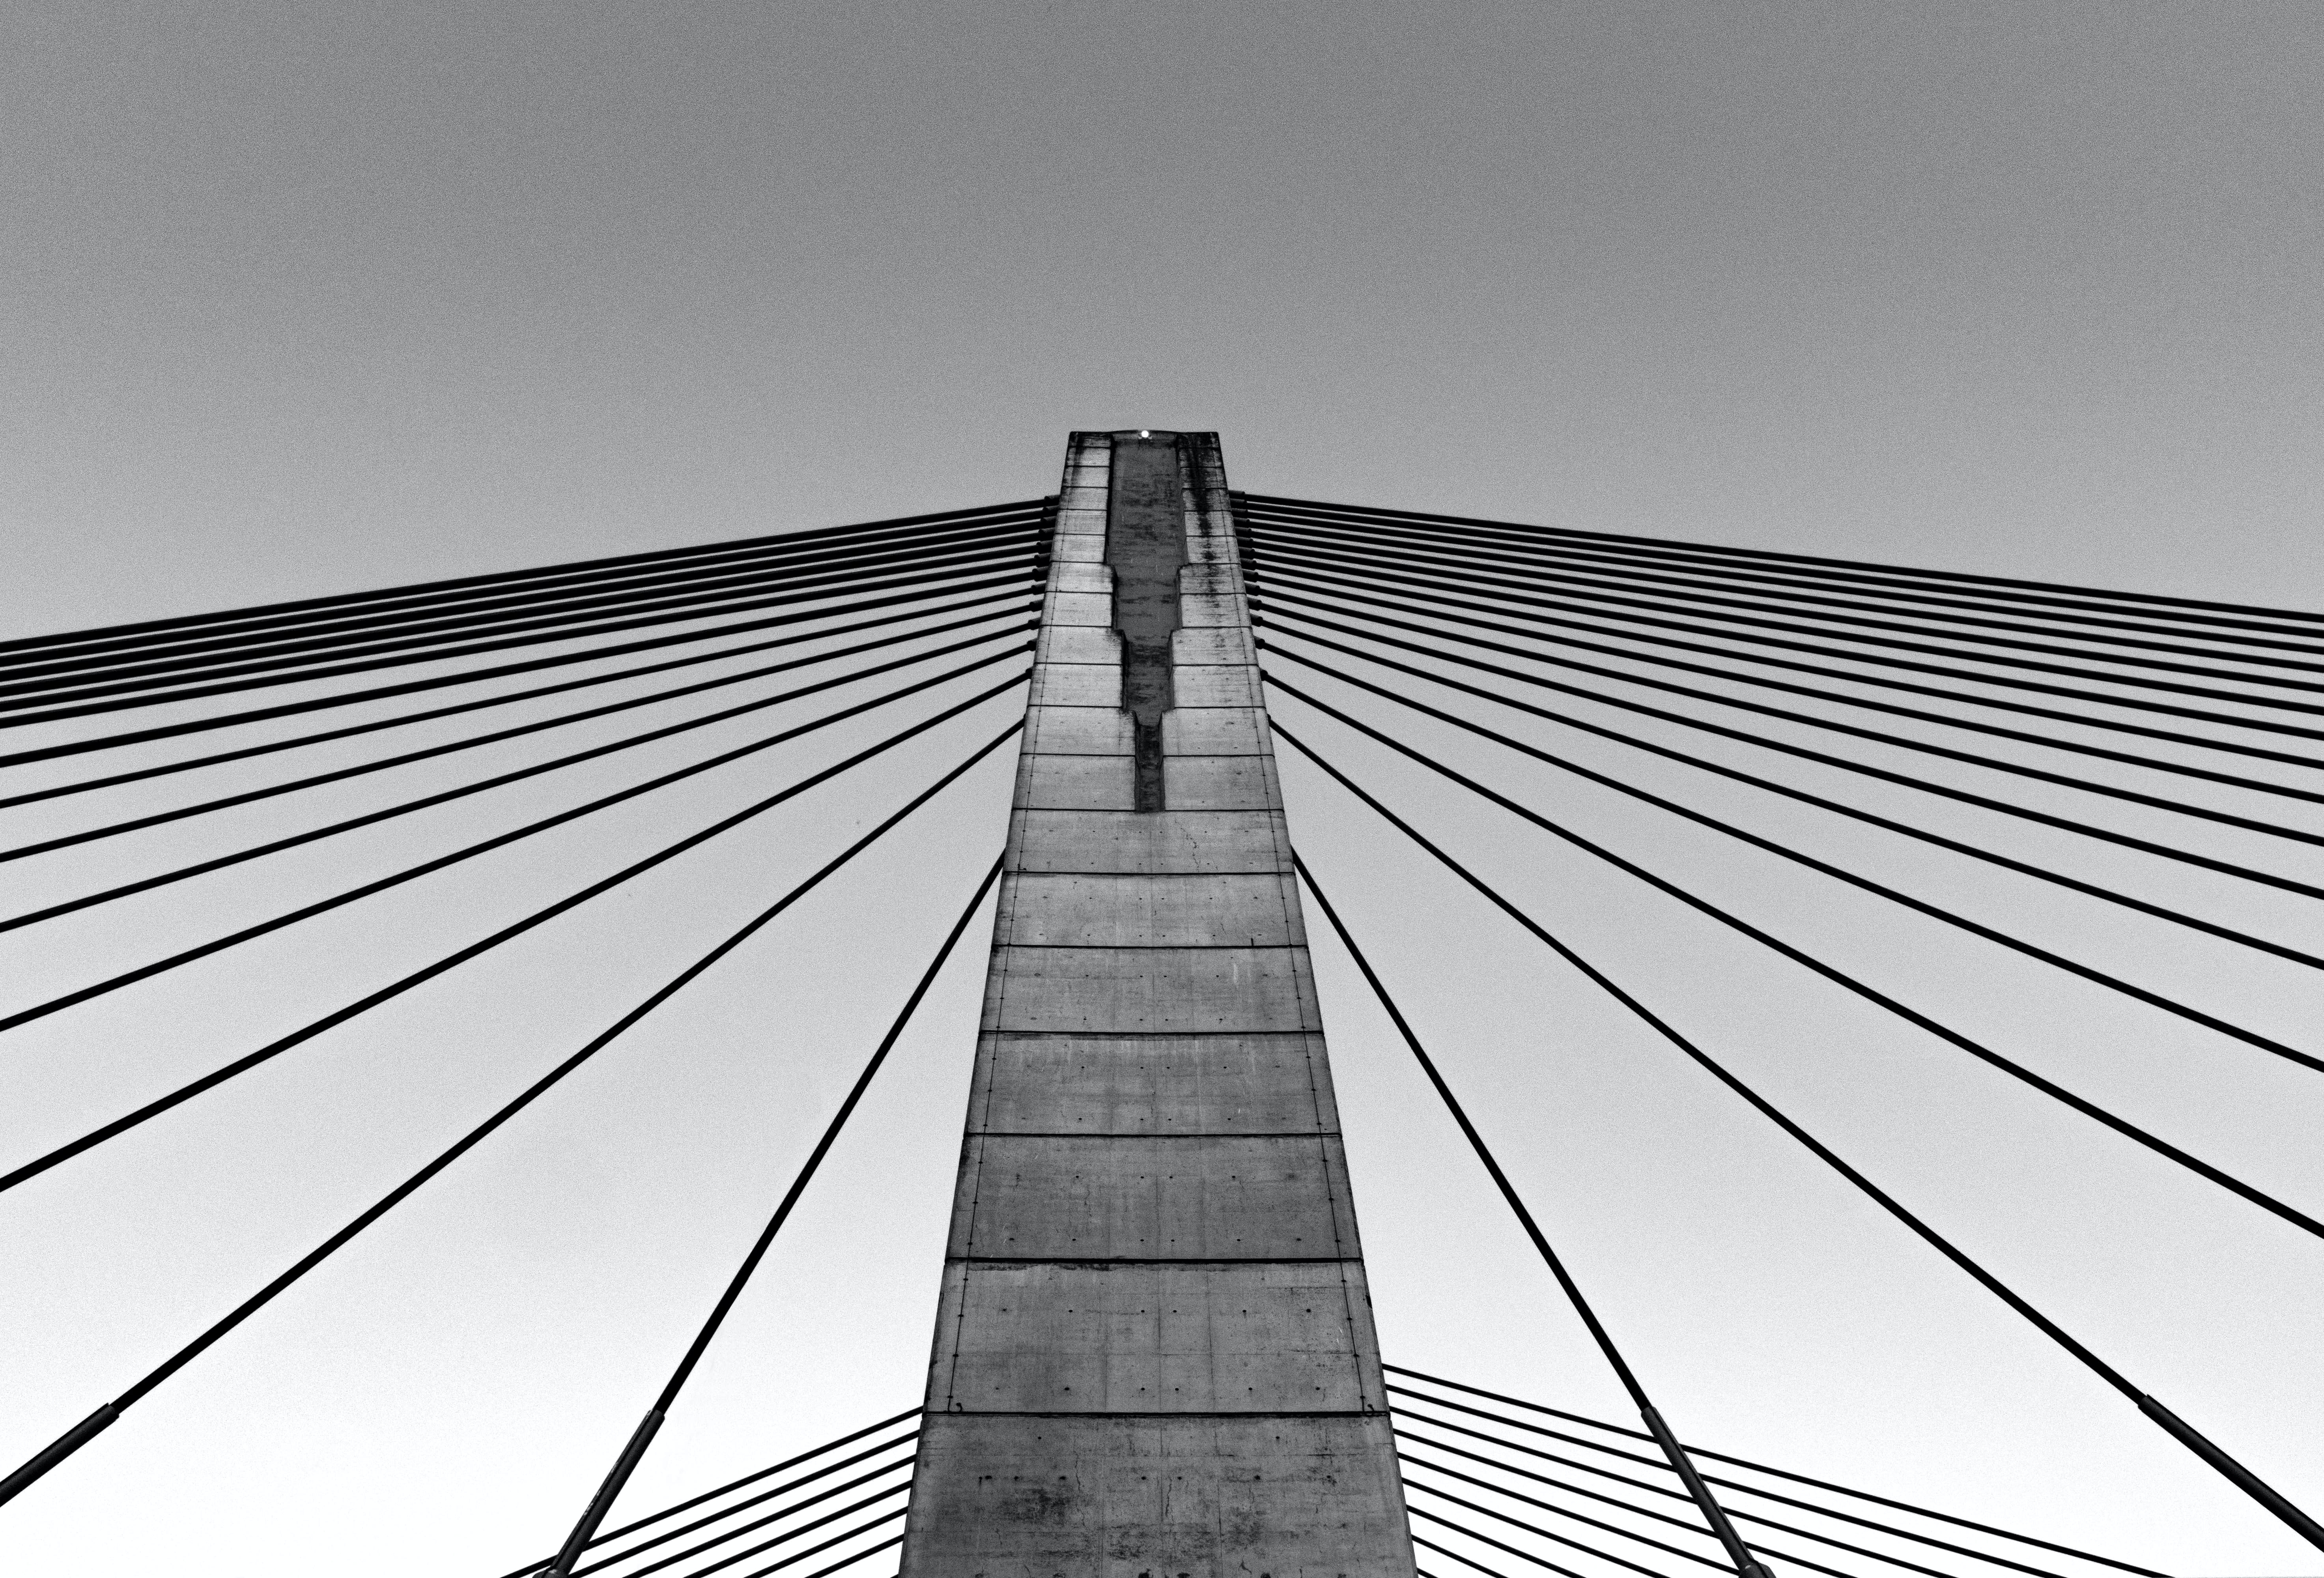 Image of a suspension bridge